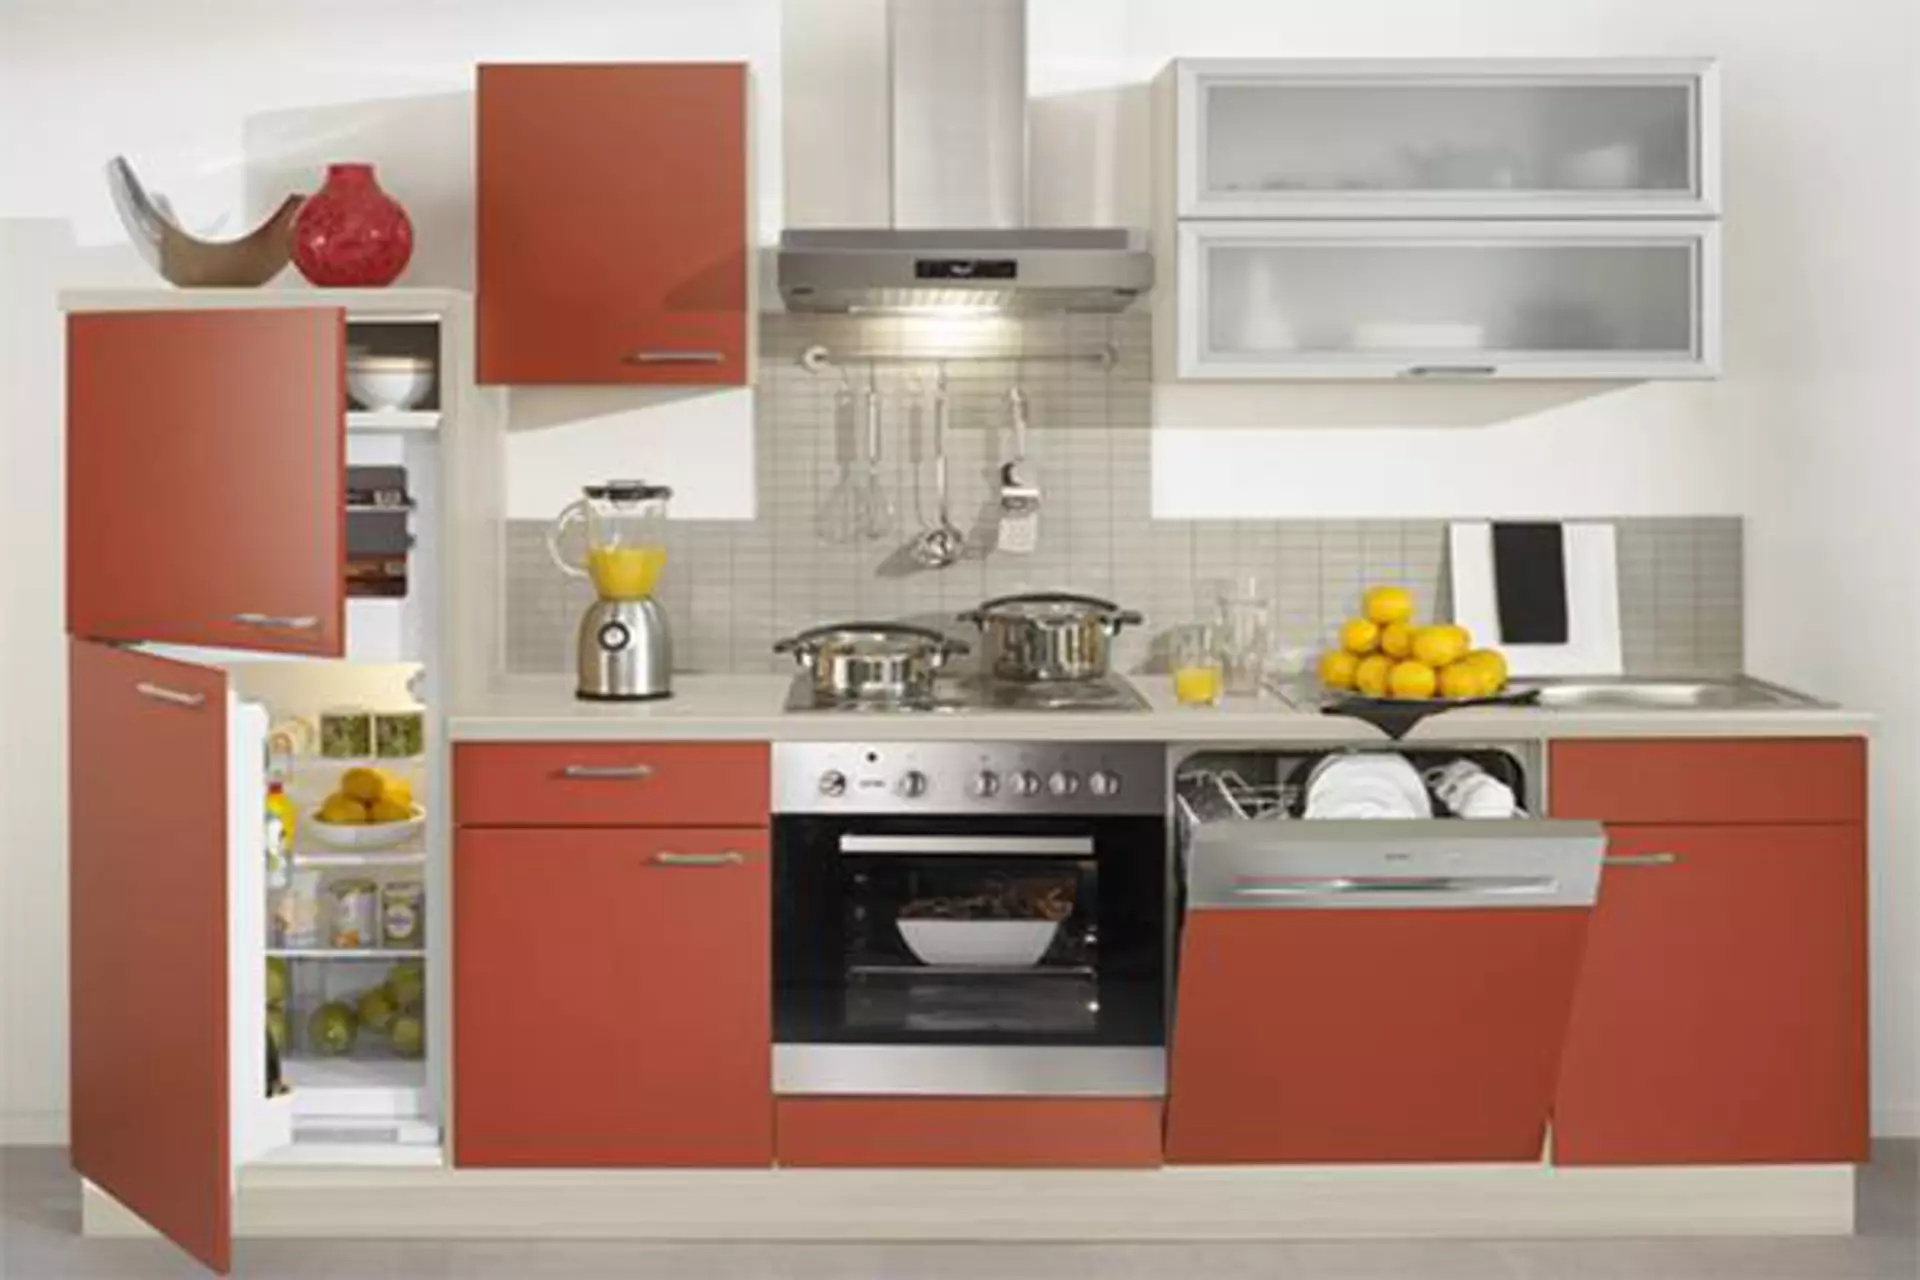 Eine komplette Küchenzeile mit rötliche Front und zahlreichen Einbaugeräten wie Backofen, Kühlschrank und Spülmaschine dient als Kategoriebild für Einbaugeräte in der Küche.